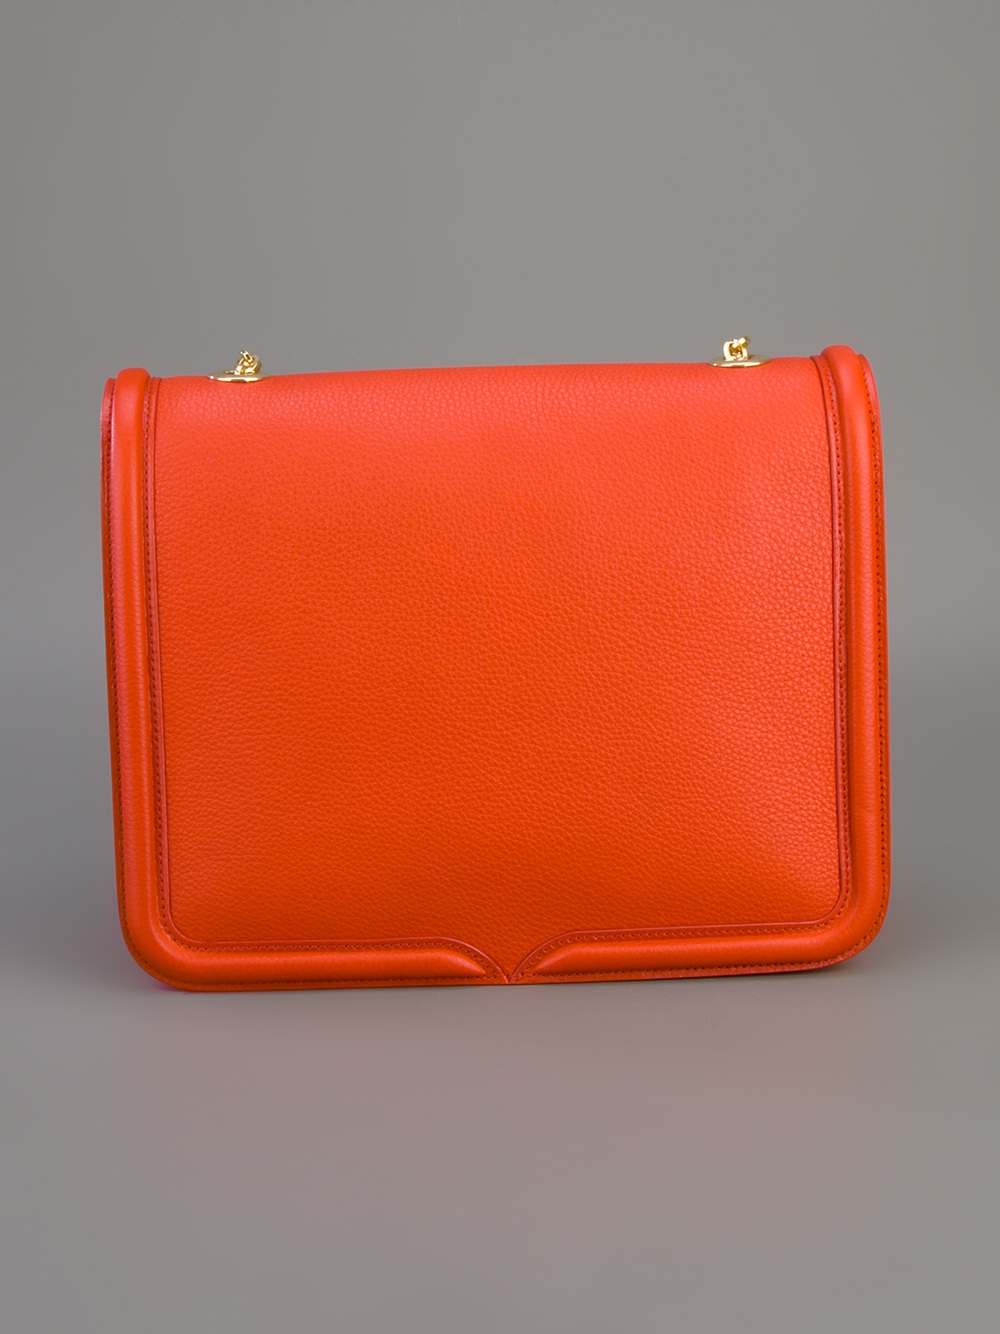 Alexander McQueen Shoulder Bag in Red (Orange) - Lyst